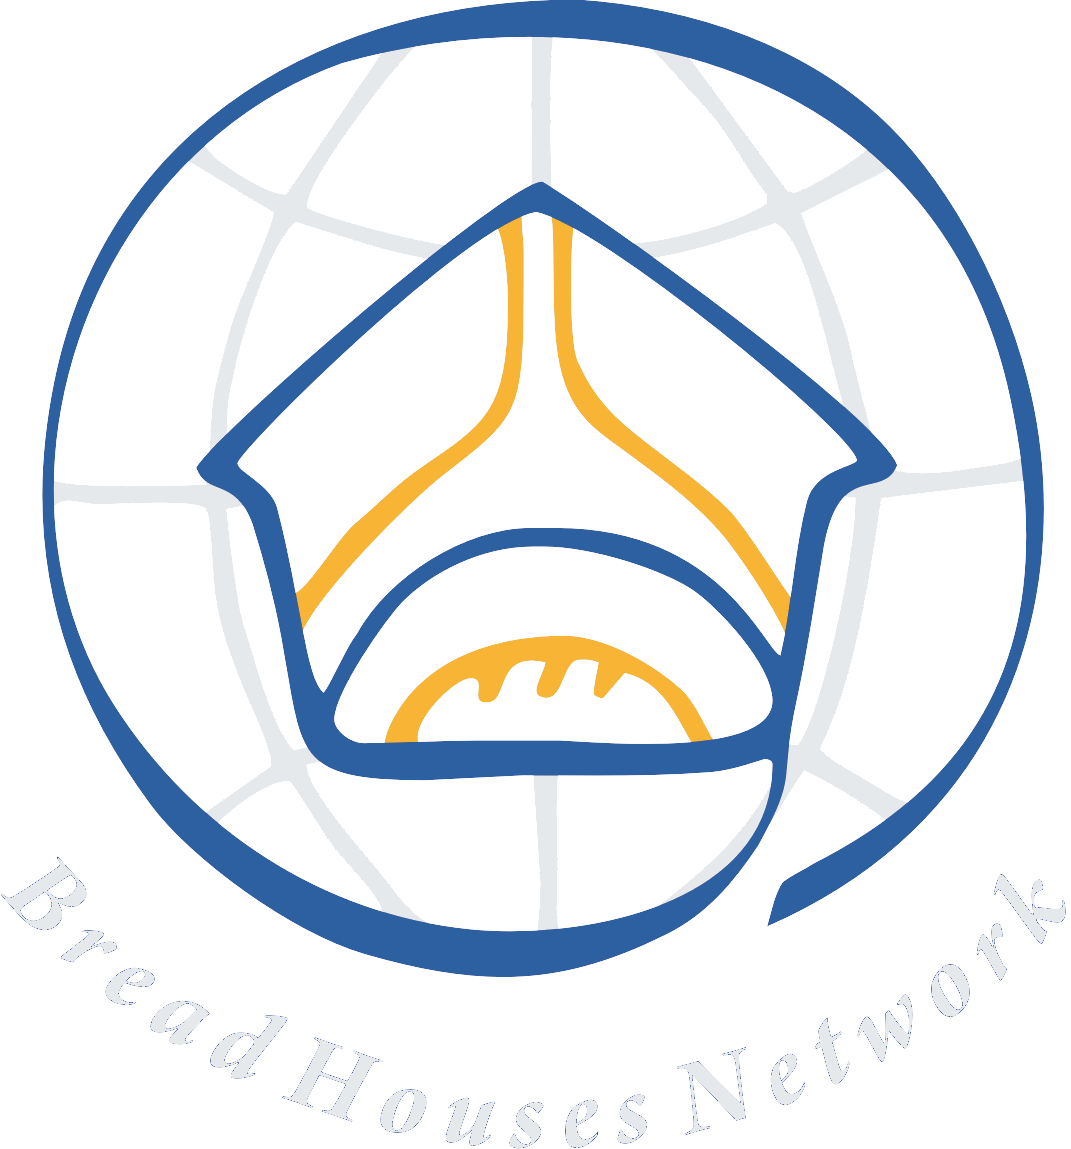 Bread Houses Network - Internationales Netzwerk Sozialbäckereien